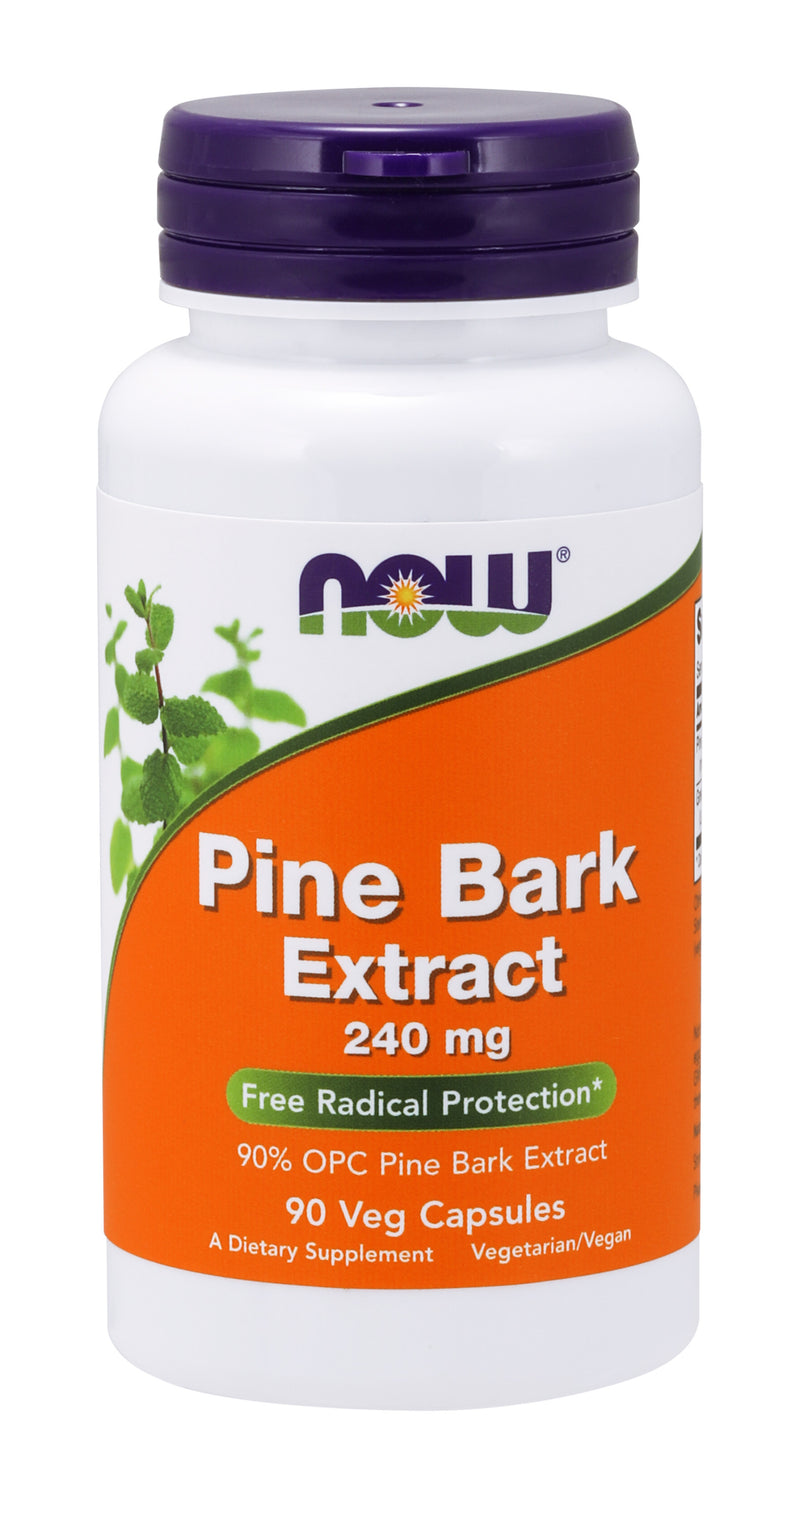 Pine Bark Extract 240 mg 90 Veg Capsules